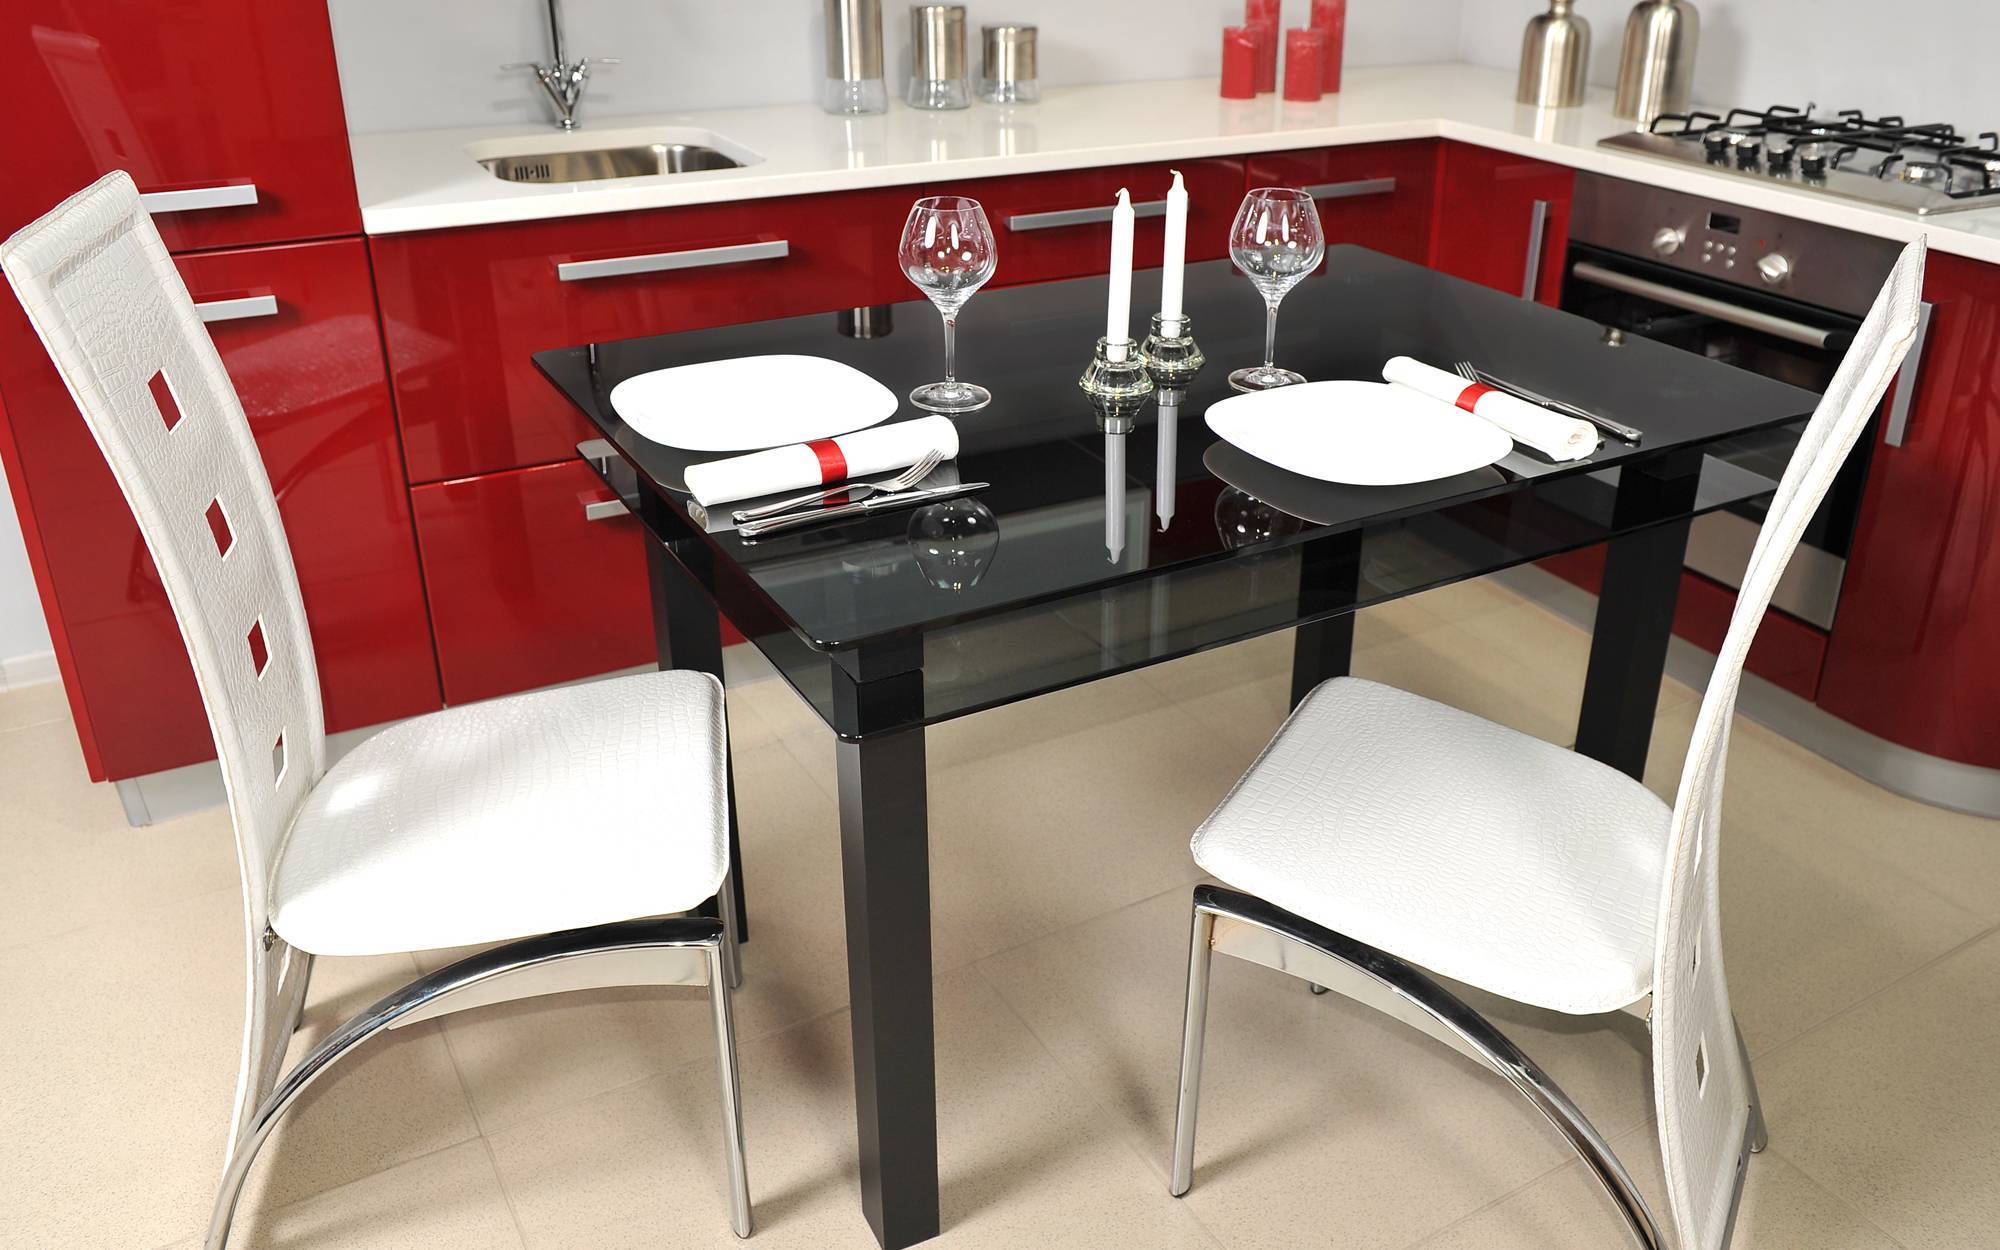 Кухонные столы и стулья для маленькой кухни: критерии выбора